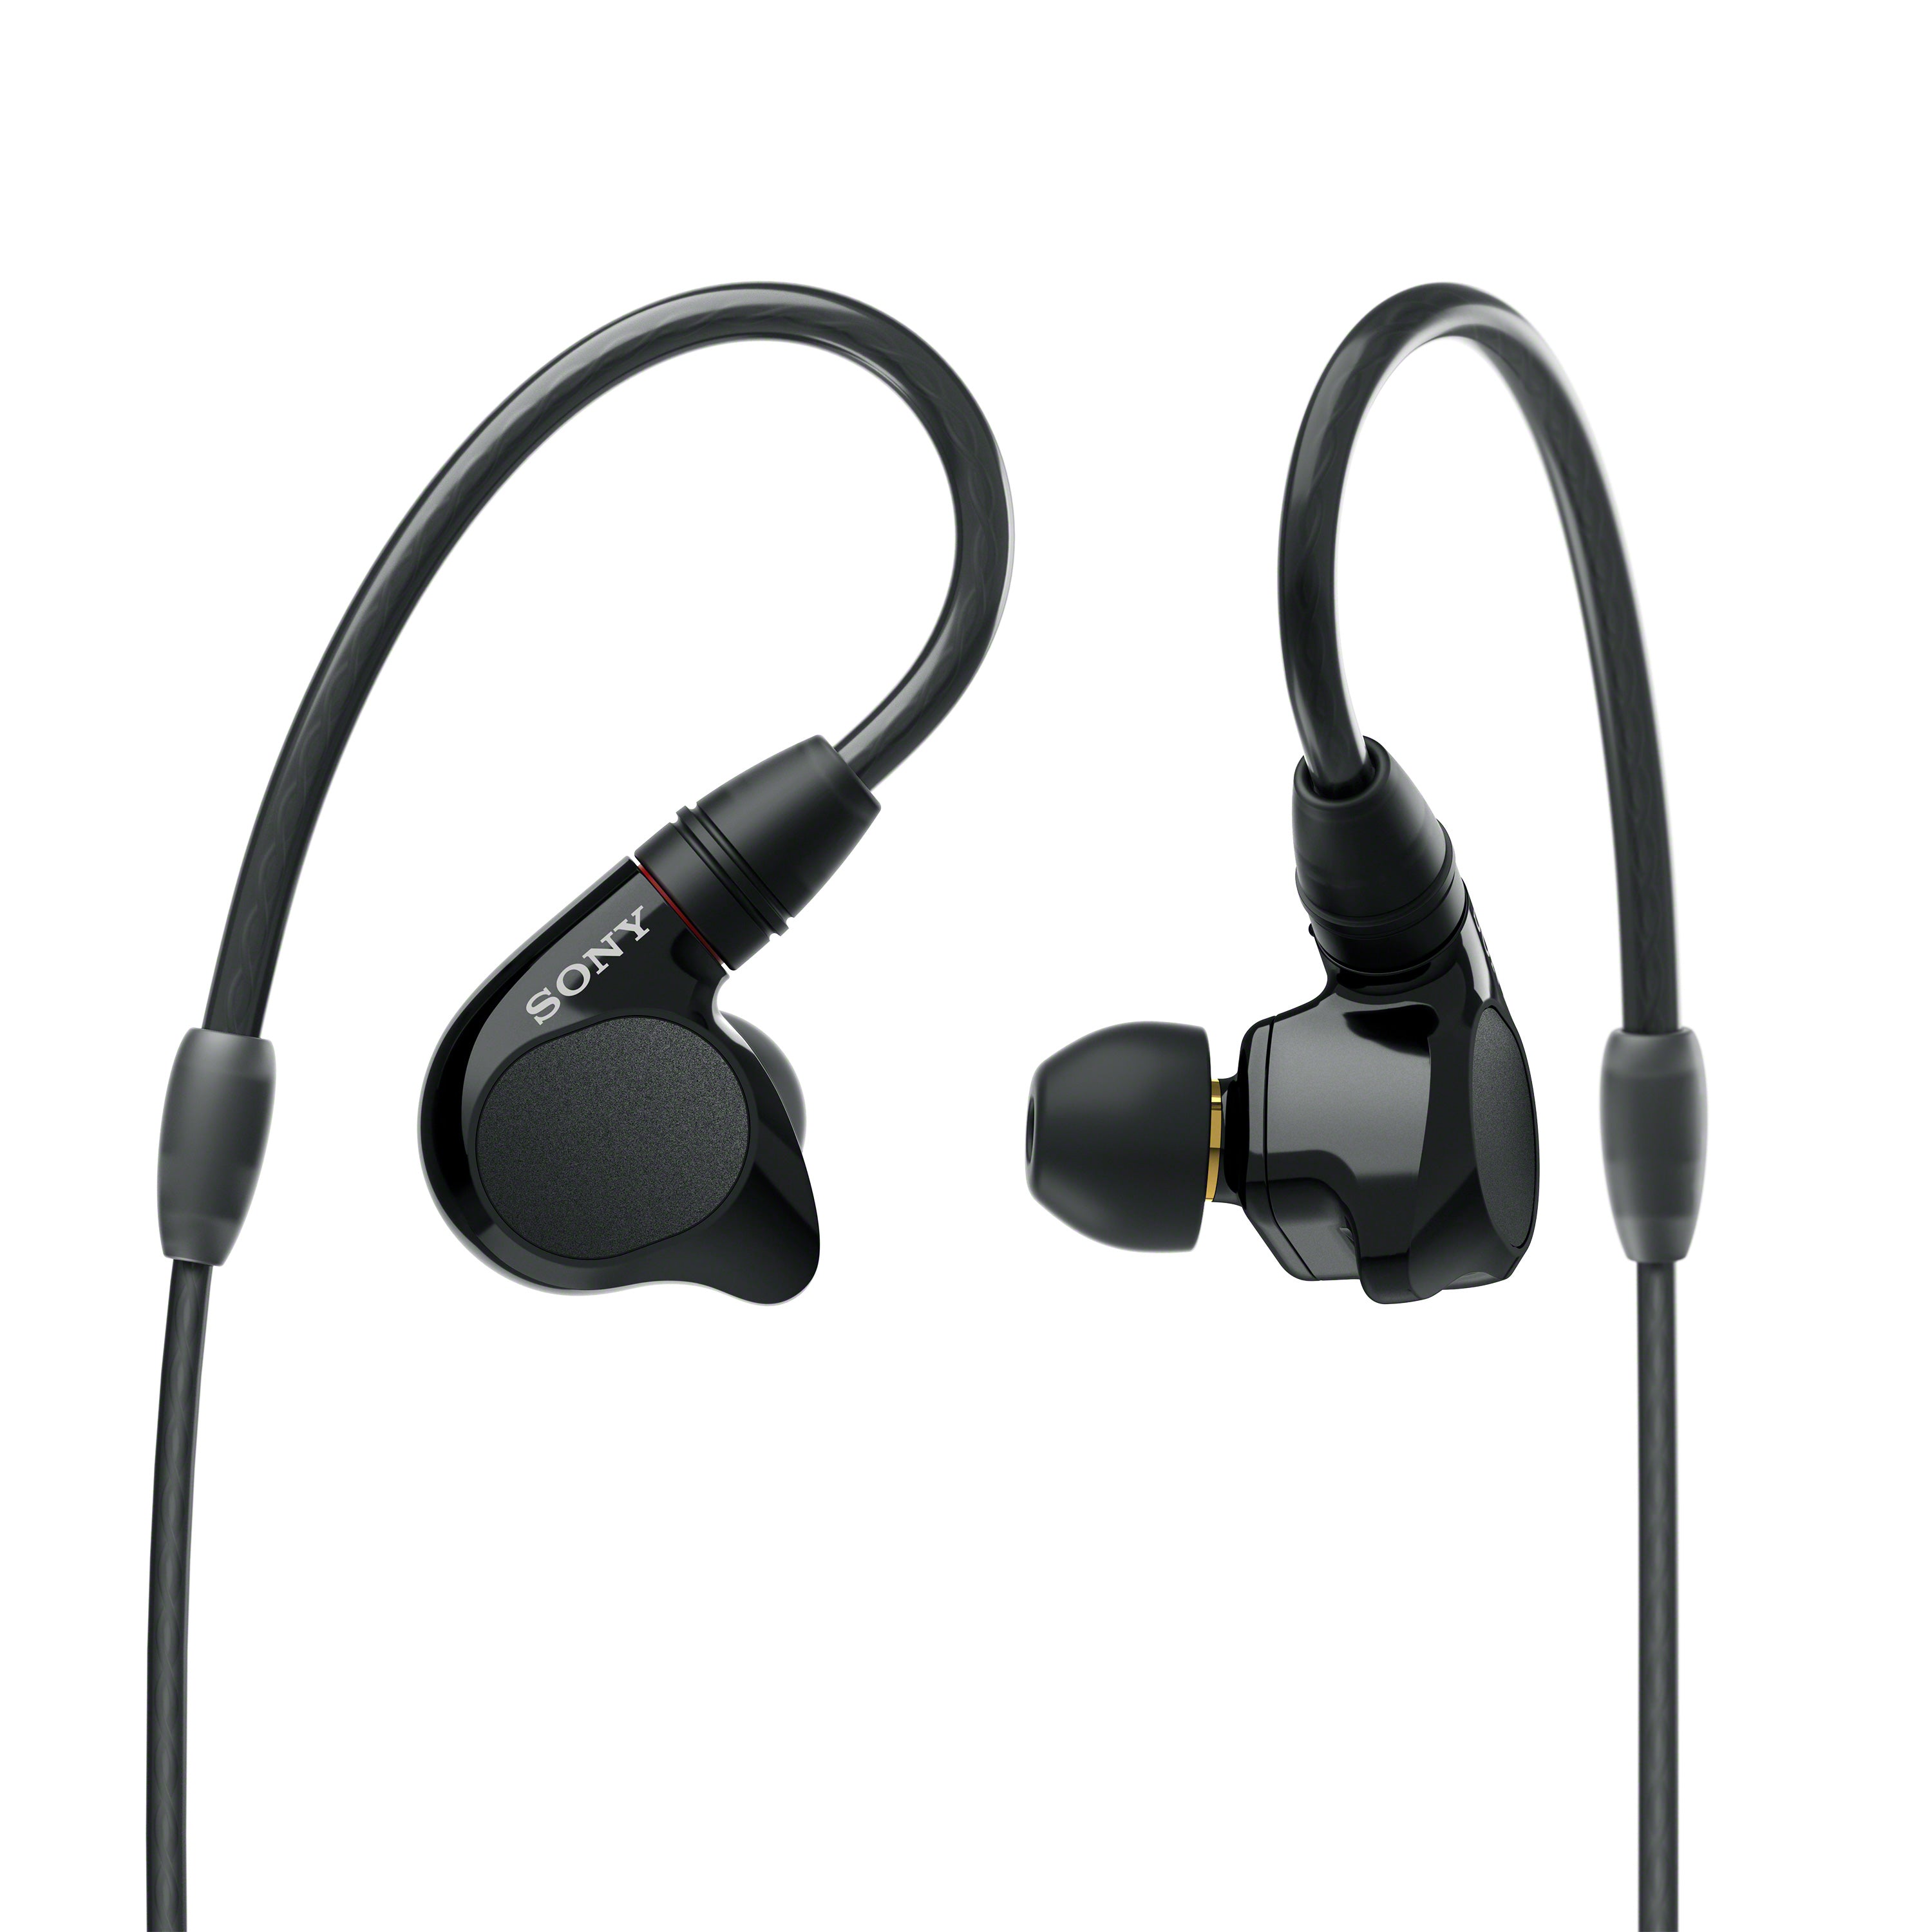 IER-M7 in-ear monitors